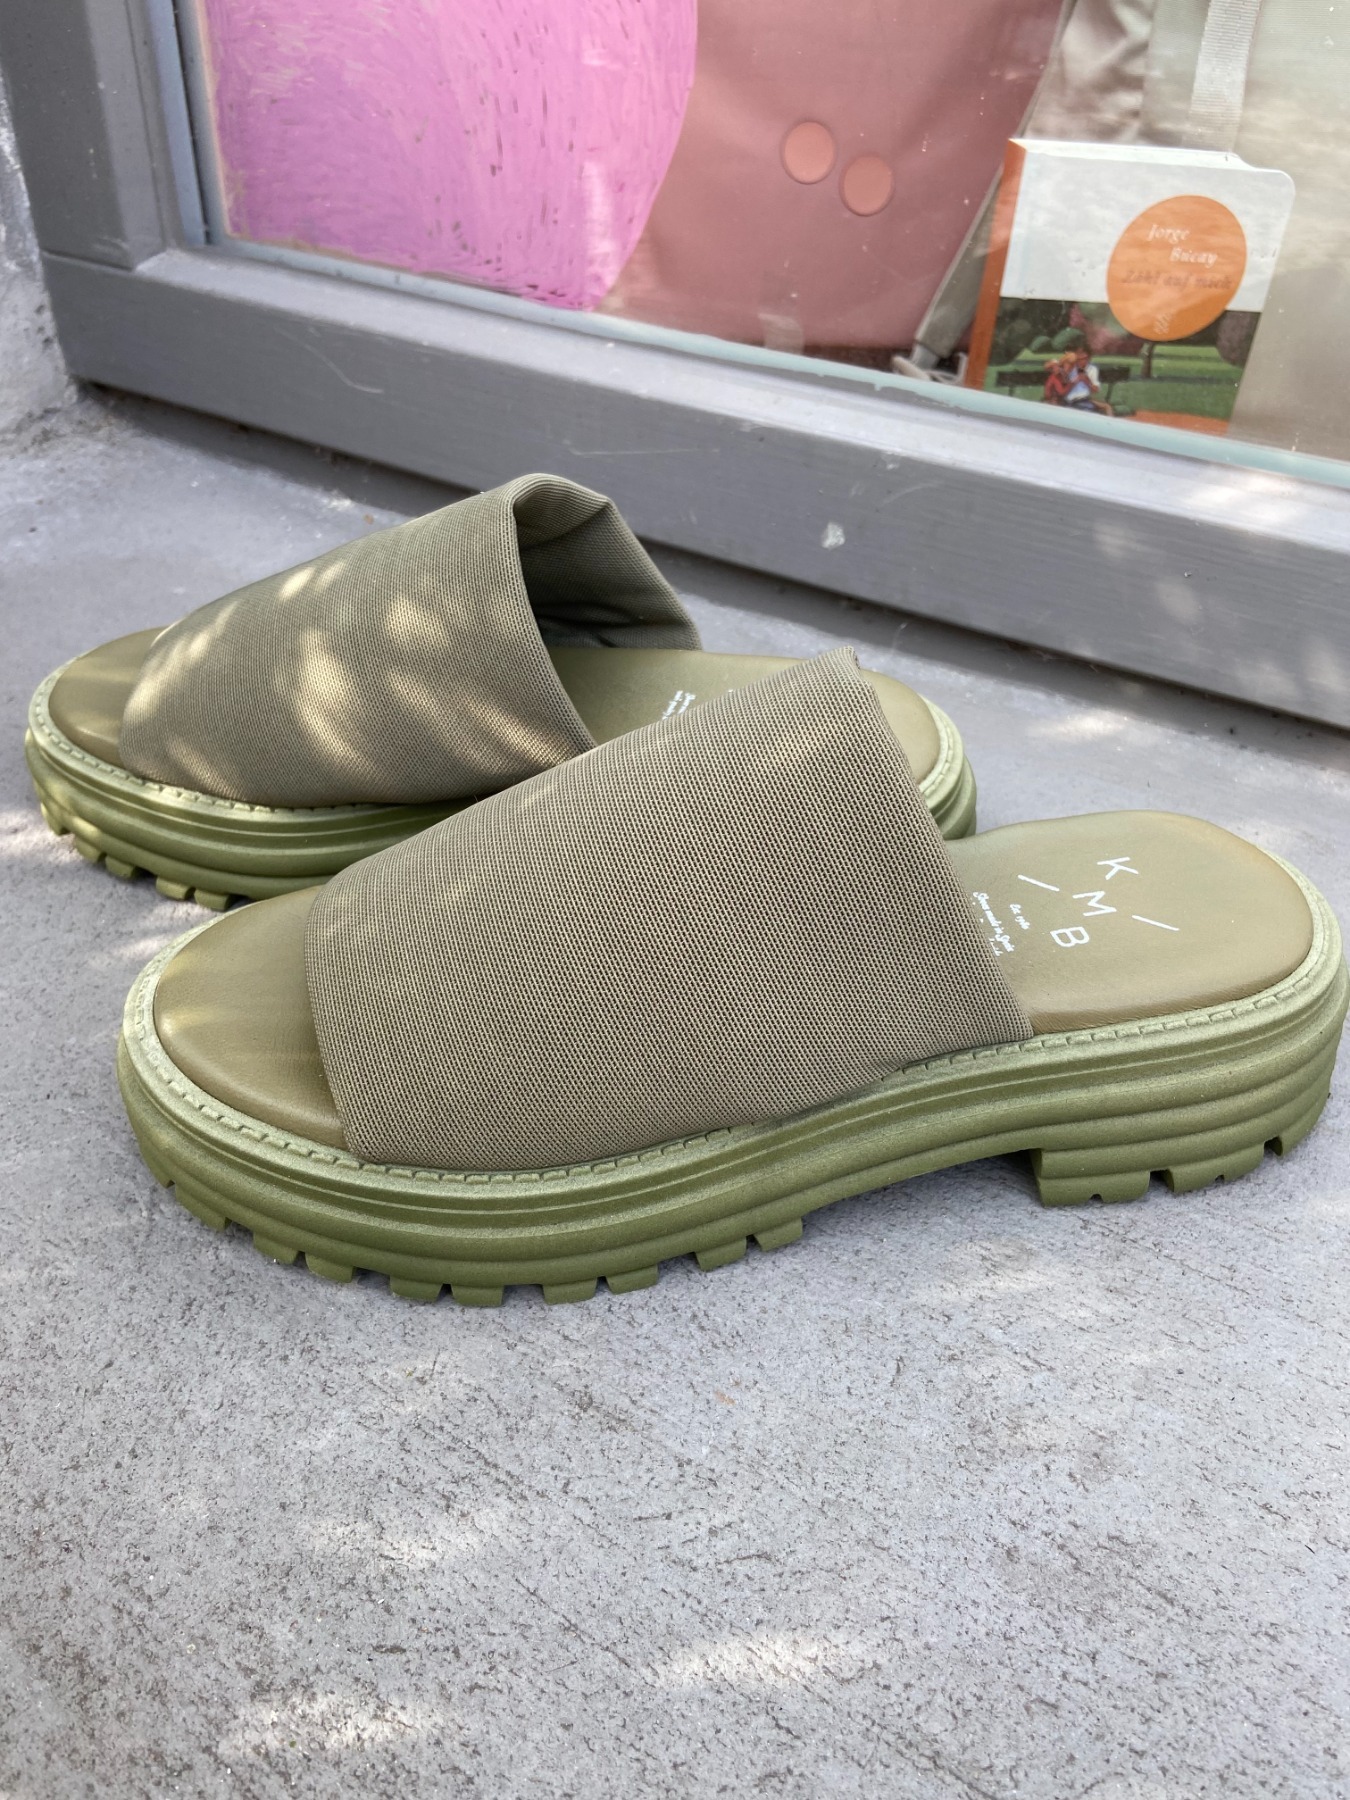 KMB Shoes - Sandale - VERDE